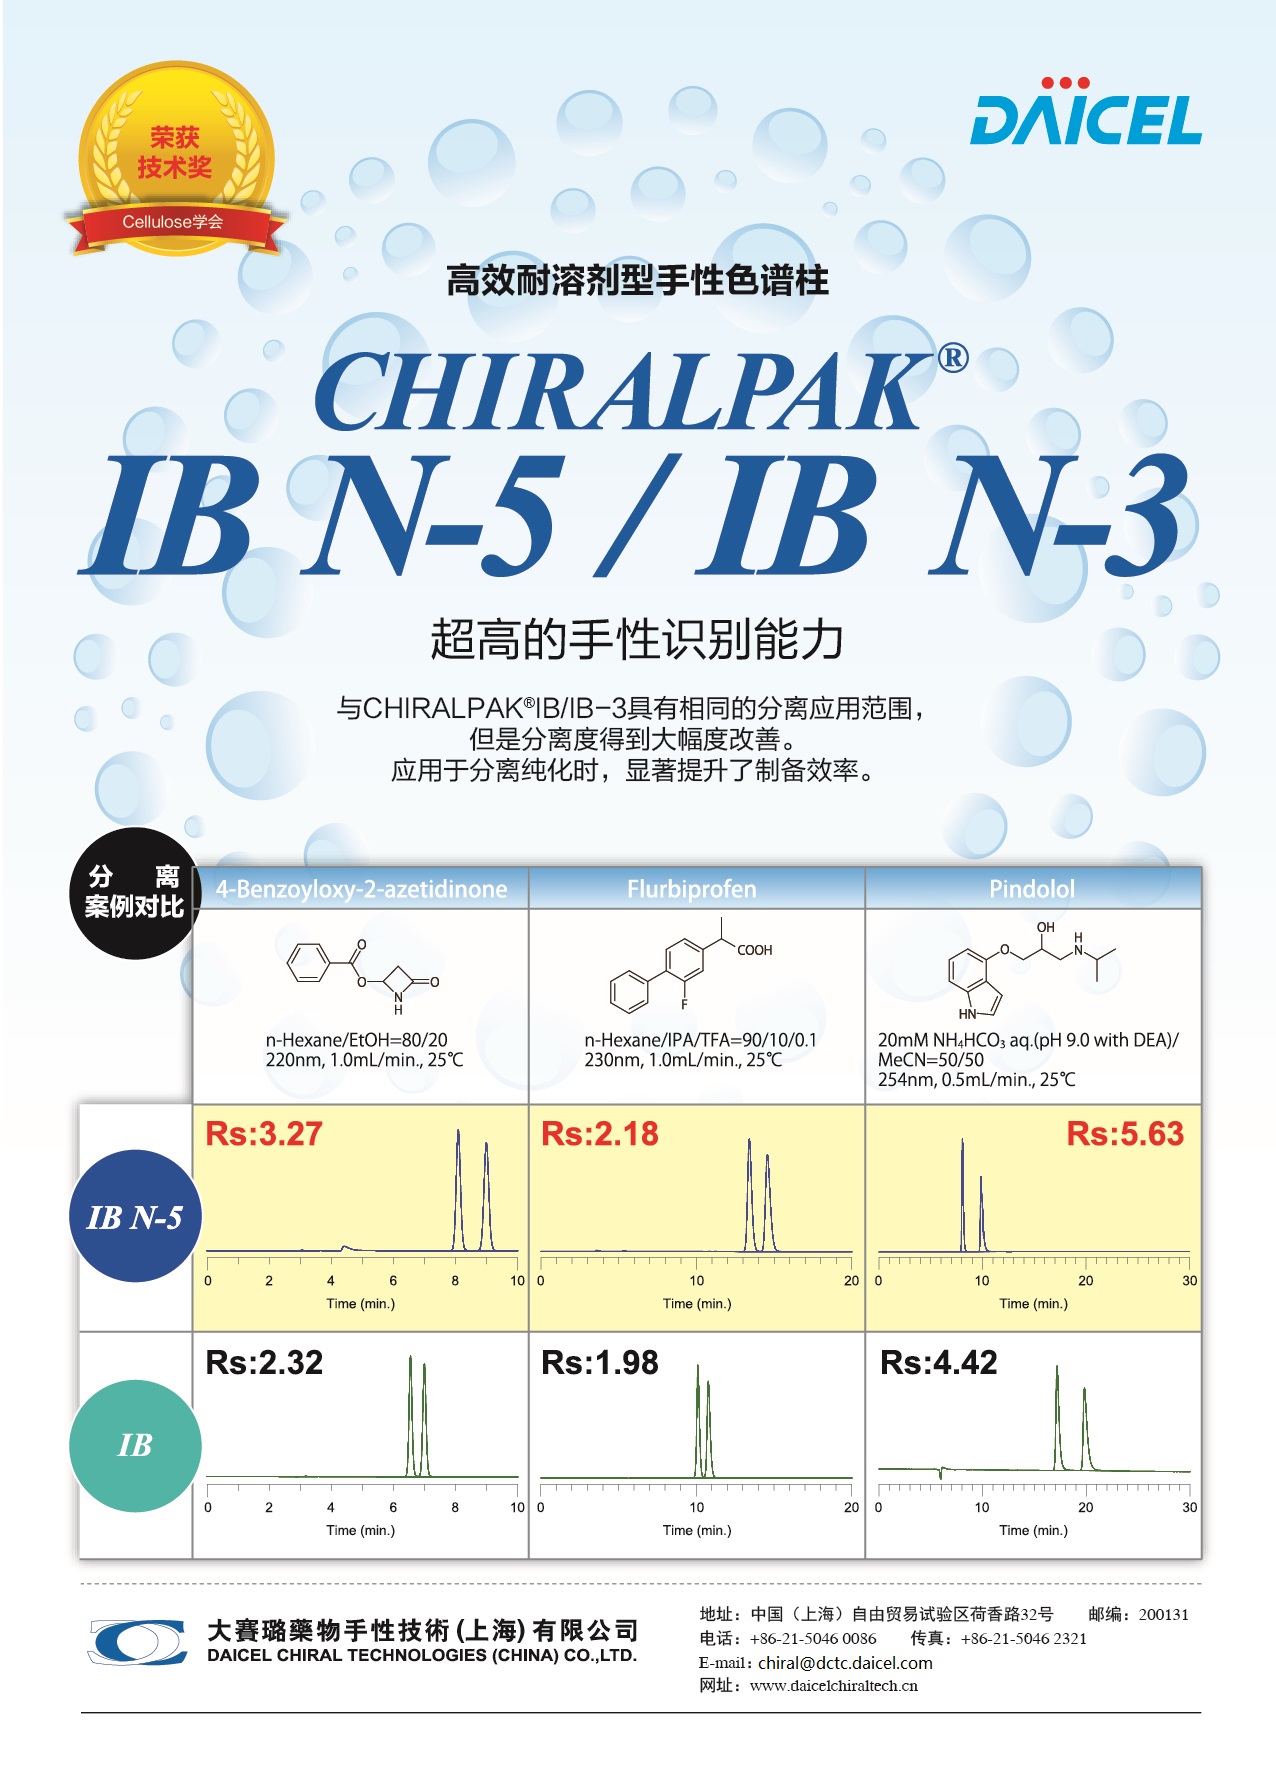 CHIRALPAK® IB N-3/IB N-5